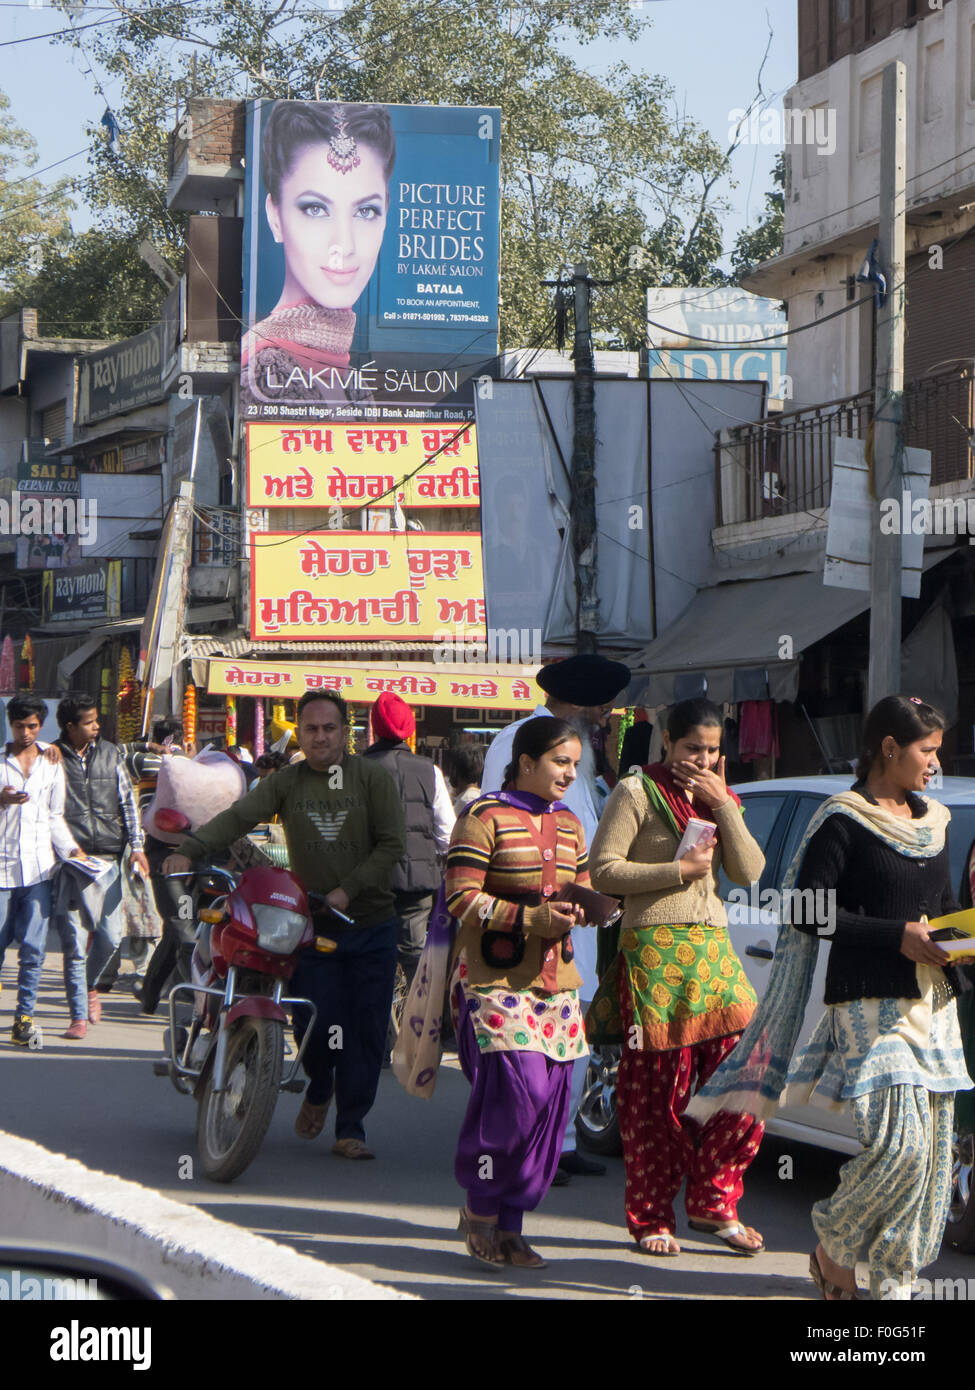 Amritsar, Punjab, Indien. Straßenbild; Fußgänger, die unten eine Werbung für "Bild perfekte Bräute" in englischer Sprache mit einem roten und gelben Schild in Punjabi unten vorbei. Stockfoto